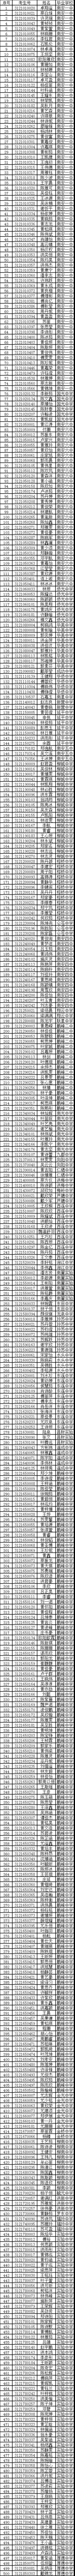 2021南安鹏峰中学录取名单